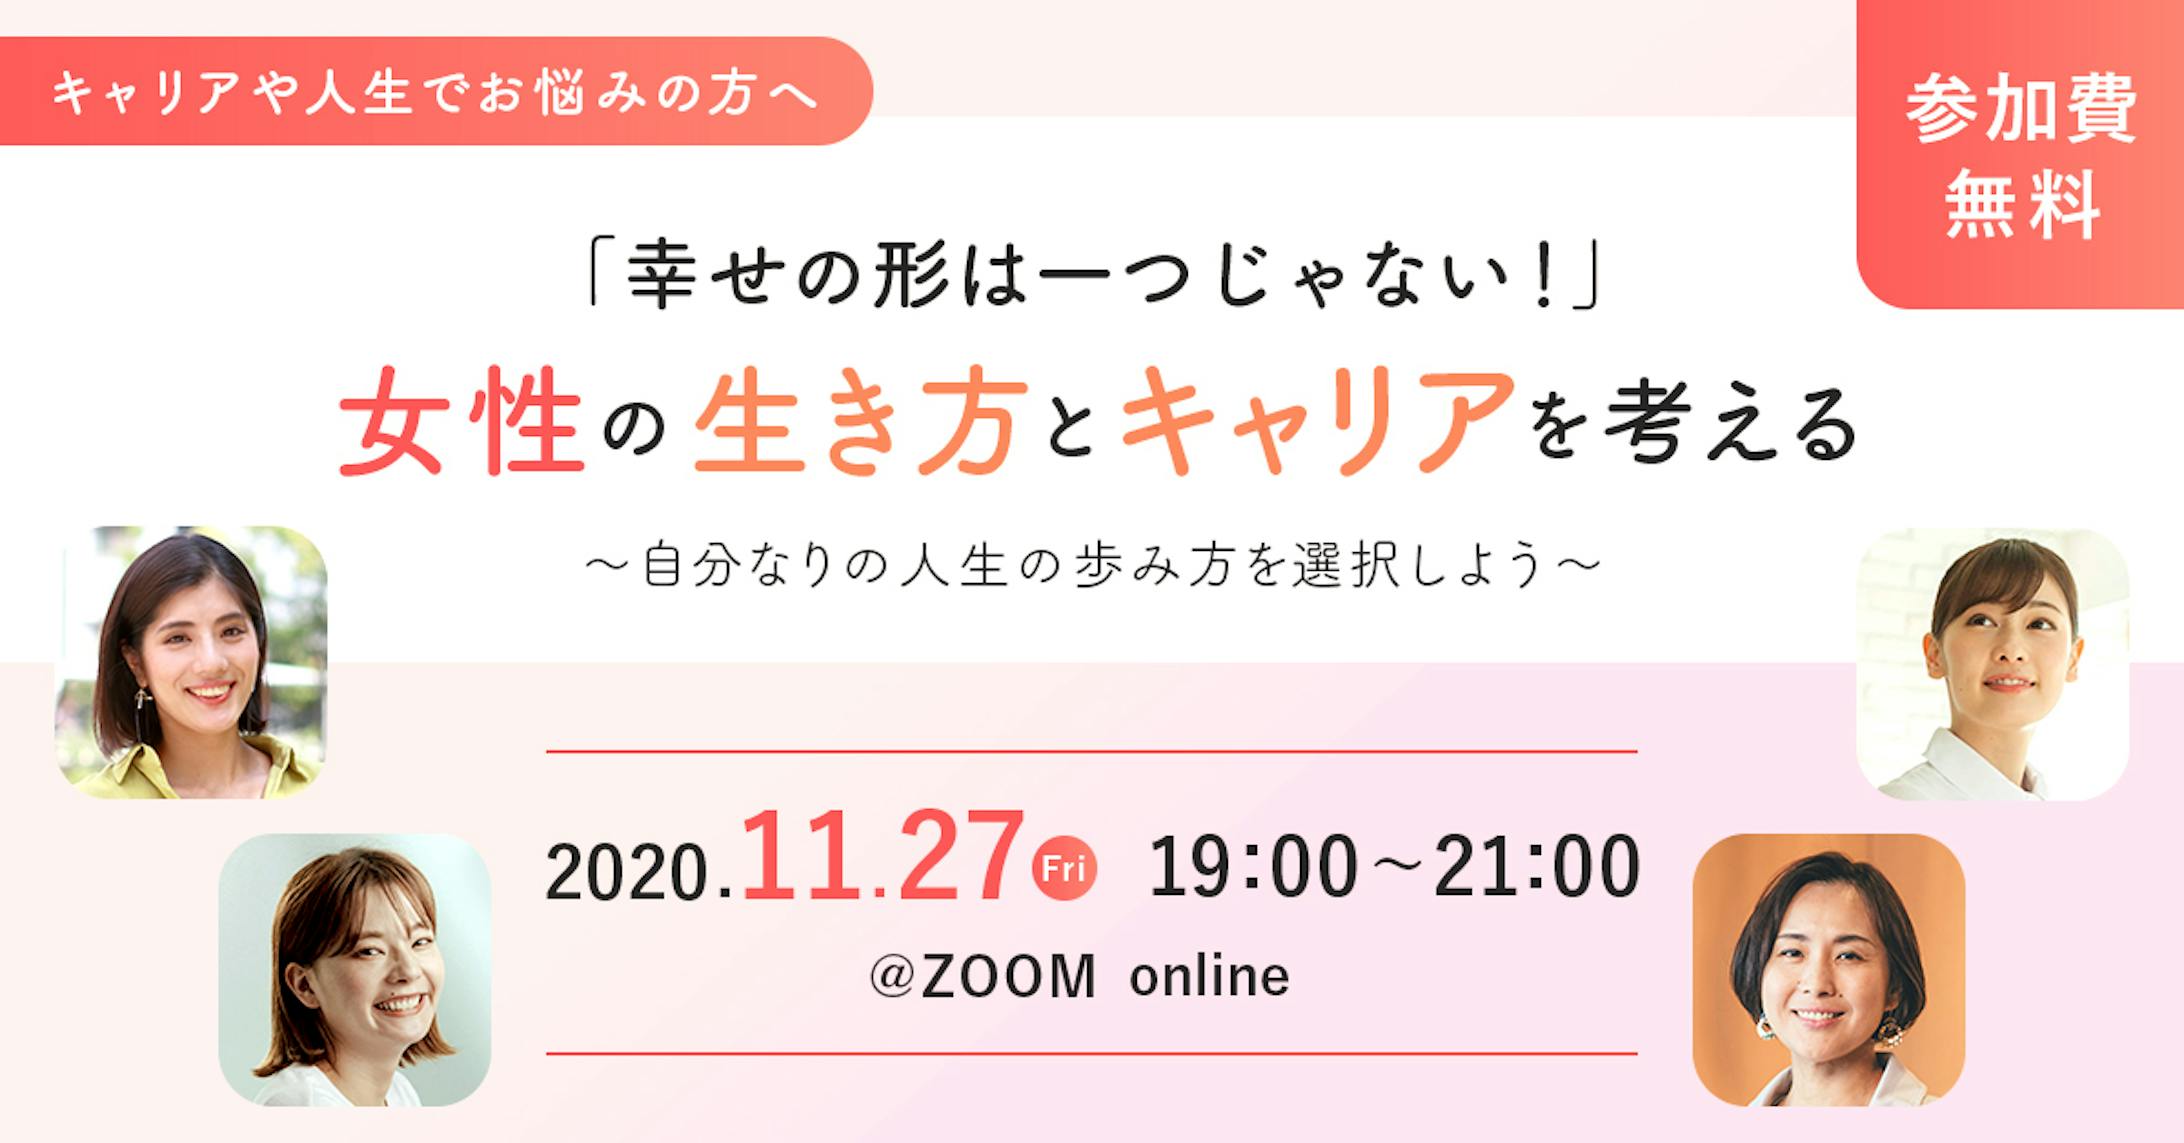 【2020.11】イベントのバナー-1